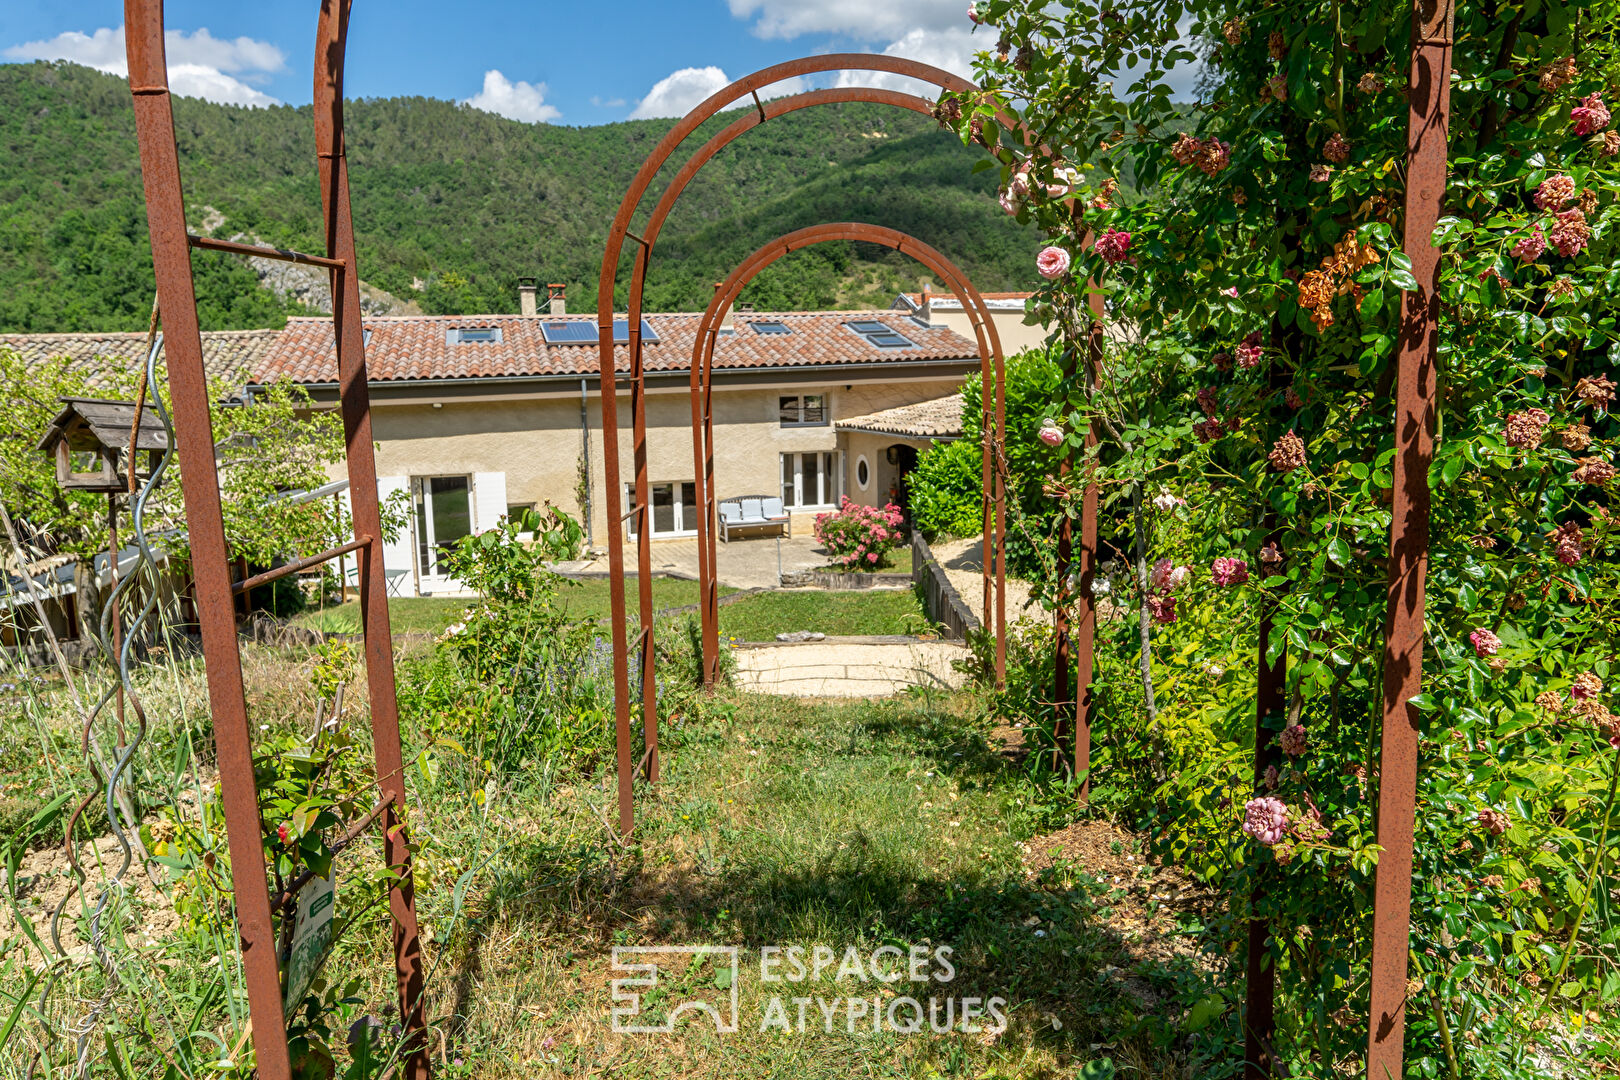 En Drôme, une discrète et surprenante maison de village.